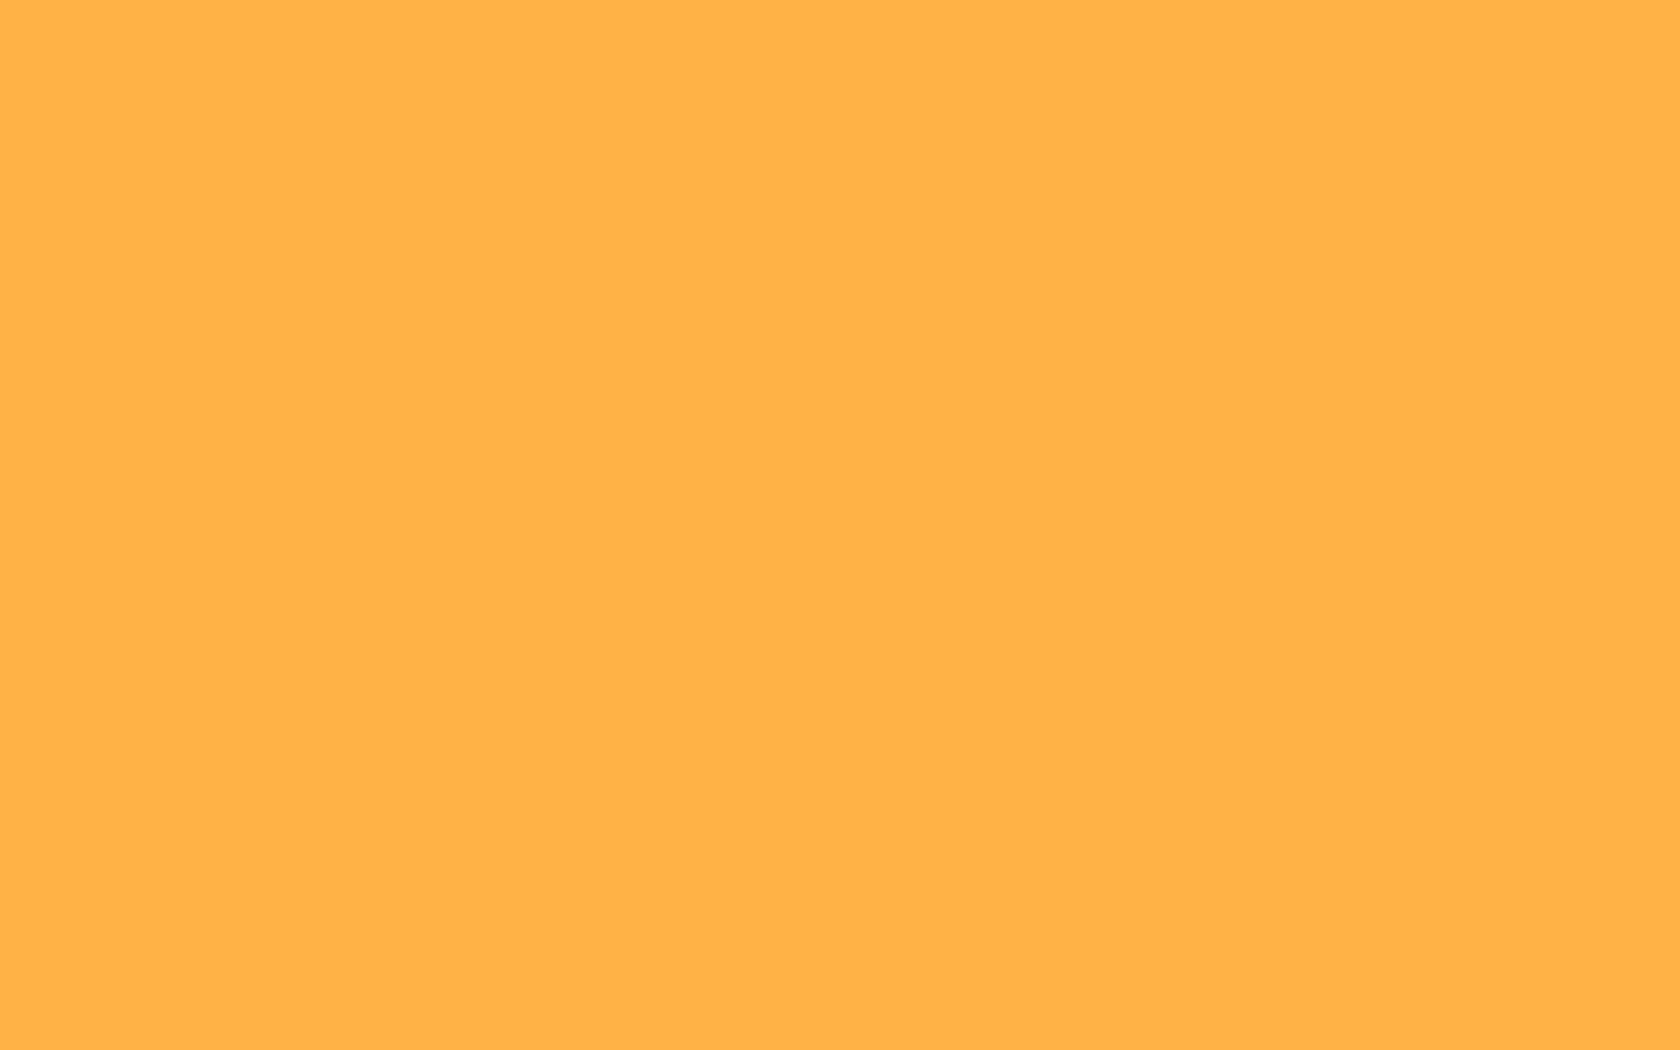 Màu cam nhạt nền đồng là một sự lựa chọn tuyệt vời để tô điểm cho trang trí của bạn. Được sử dụng trong nhiều thể loại thiết kế từ hiện đại đến cổ điển. Hãy xem hình ảnh liên quan để tìm hiểu thêm về sự pha trộn hài hòa giữa màu cam nhạt và nền đồng rực rỡ.